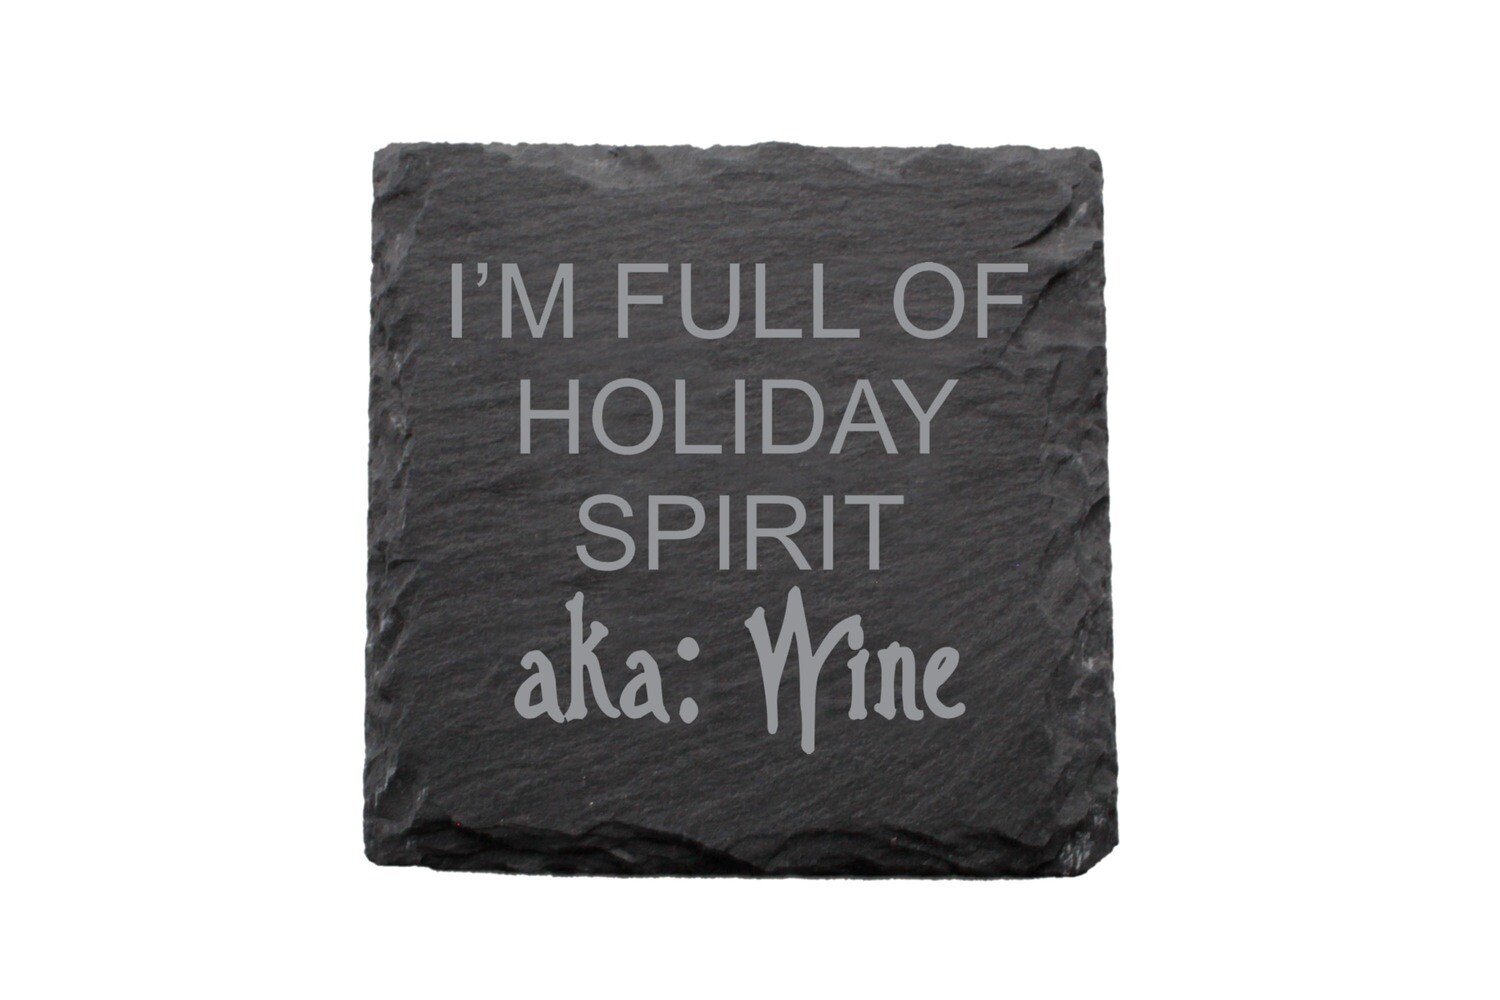 I'm Full of Holiday Spirit aka Wine Slate Coaster Set